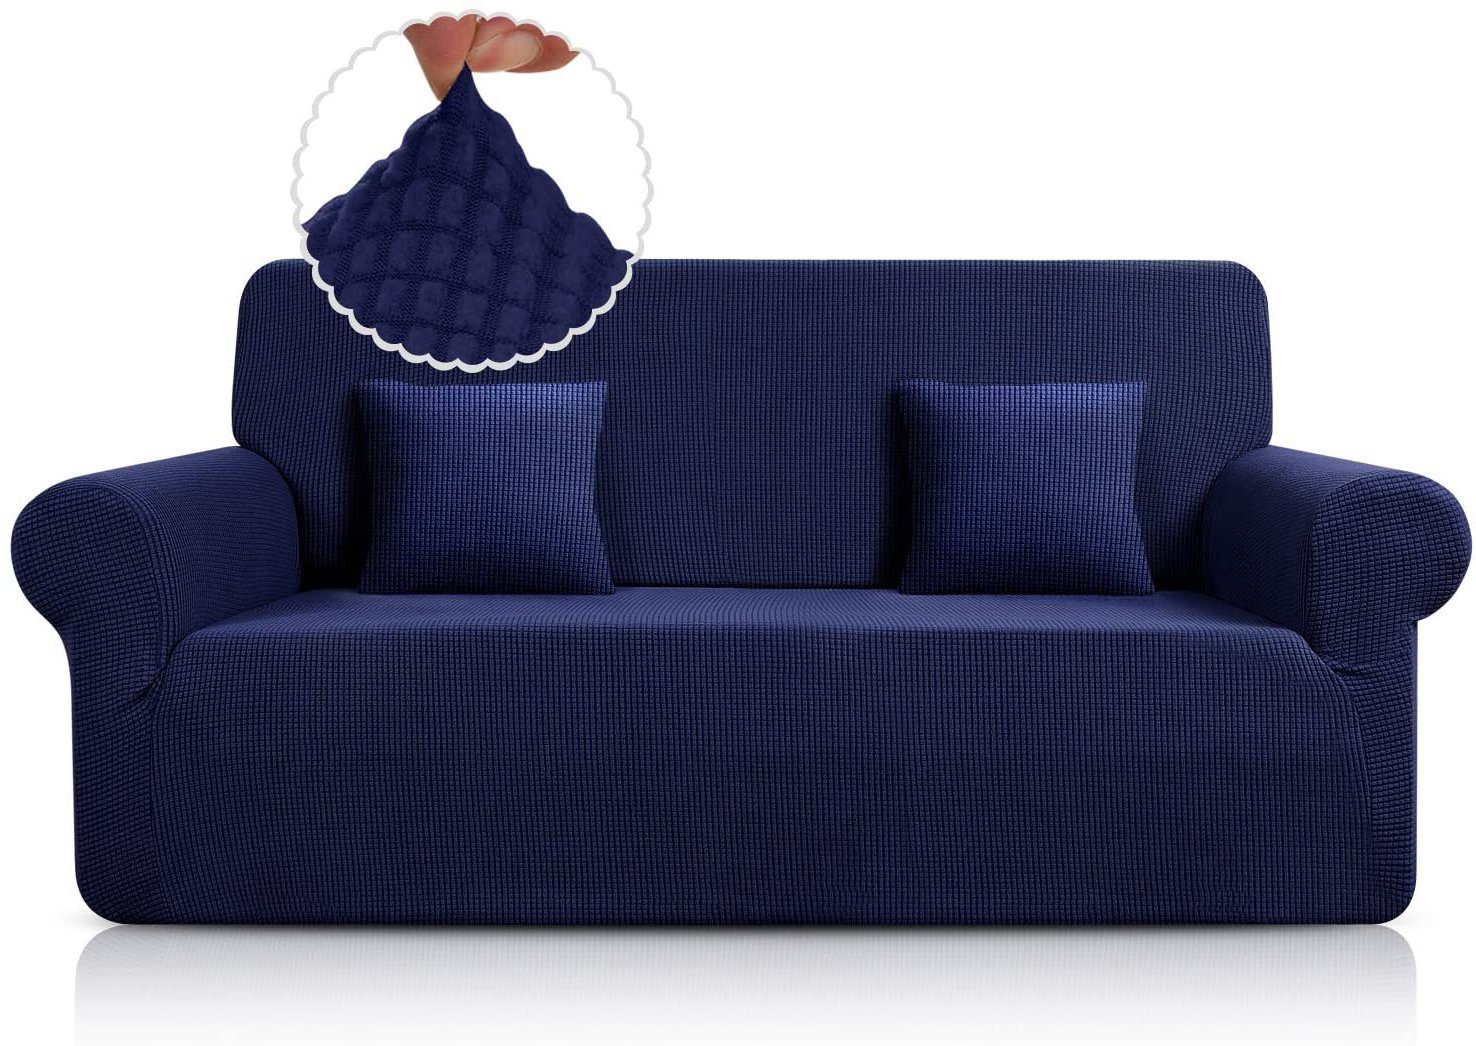 Sofabezug Super Stretch Couchbezug Universal Jormftte Sofabezug für Dunkelblau Sofahusse, 1 Stück